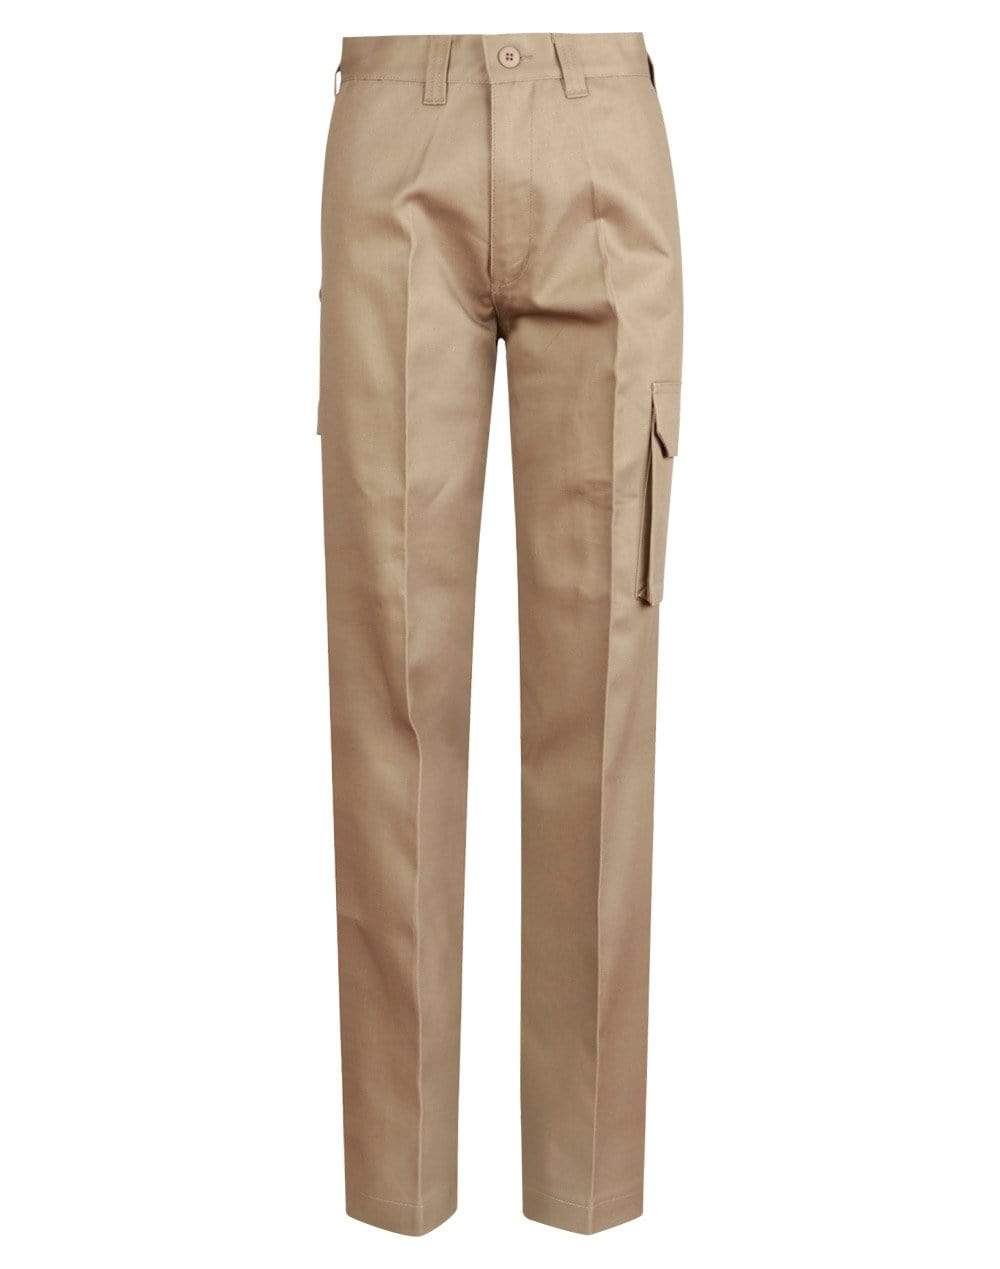 Australian Industrial Wear Work Wear Khaki / 74L Men's HEAVY COTTON PRE-SHRUNK DRILL PANTS Long Leg WP13